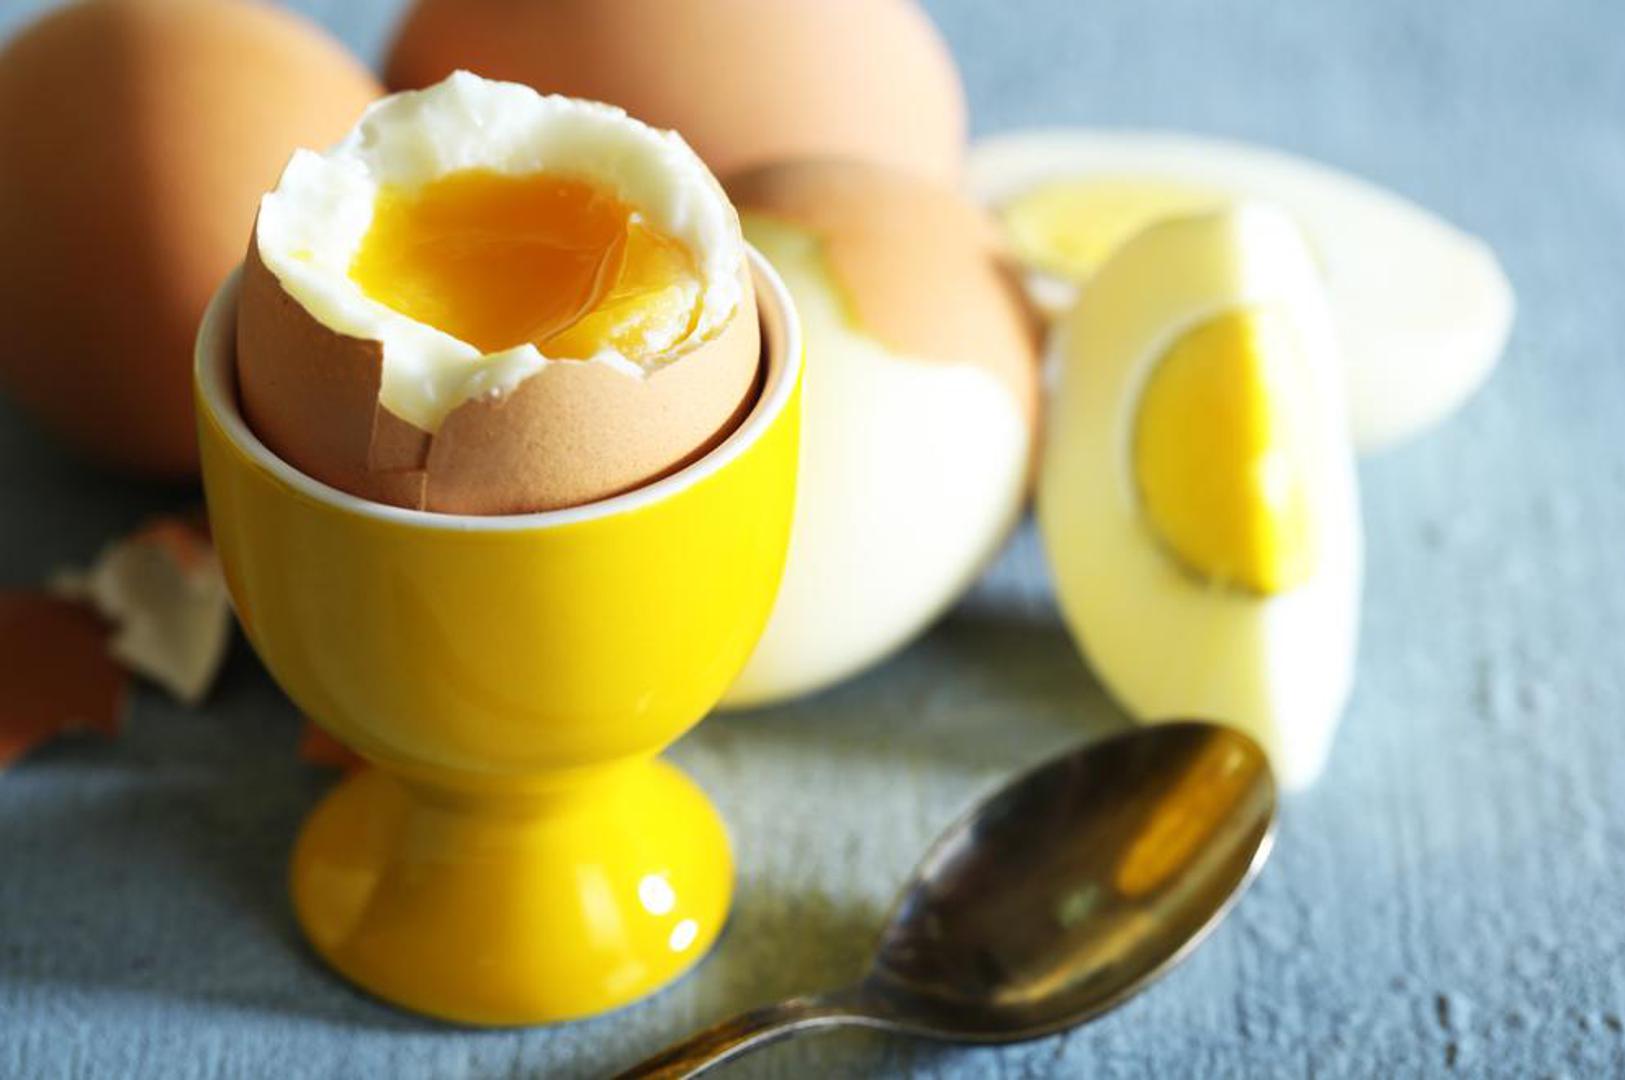 Stručnjaci savjetuju da tijekom ljetnih mjeseci konzumirate  jedno ili dva jaja, ali ne više od toga. Radije birajte kuhano jaje umjesto omleta jer ćete tako konzumirati manje masnoća zbog načina pripreme. 